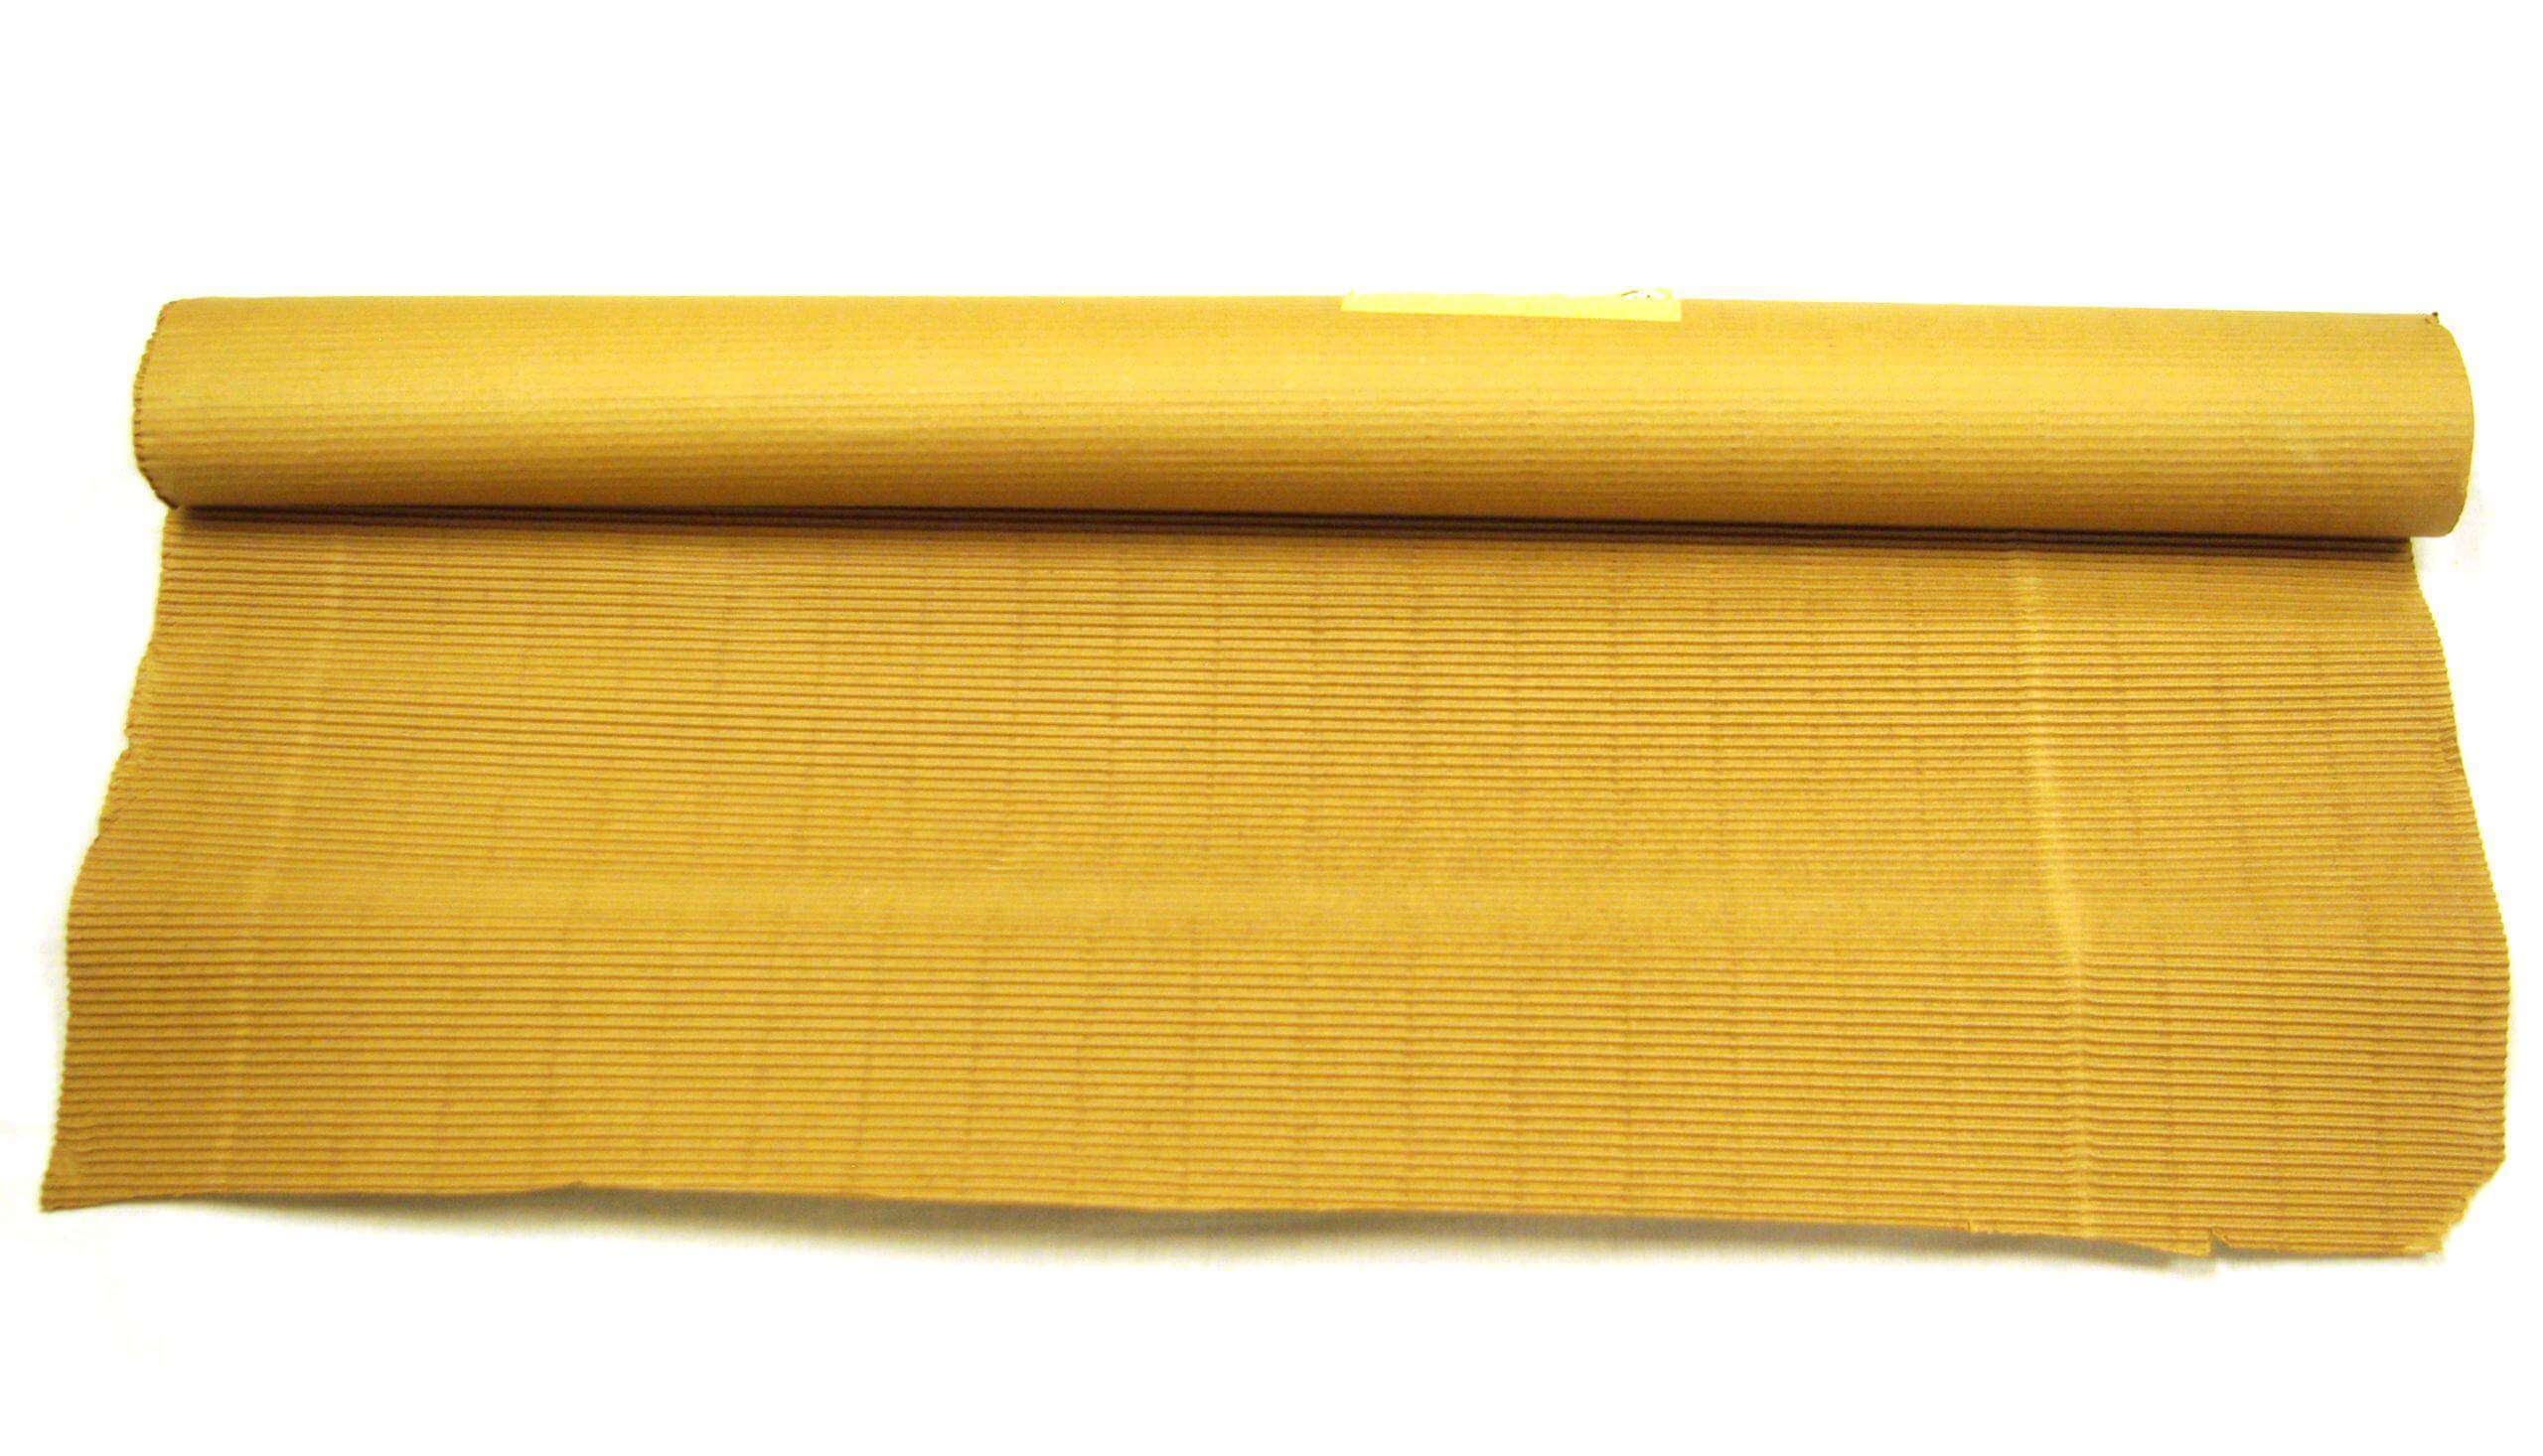 4 x 250' B Flute Cardboard Roll